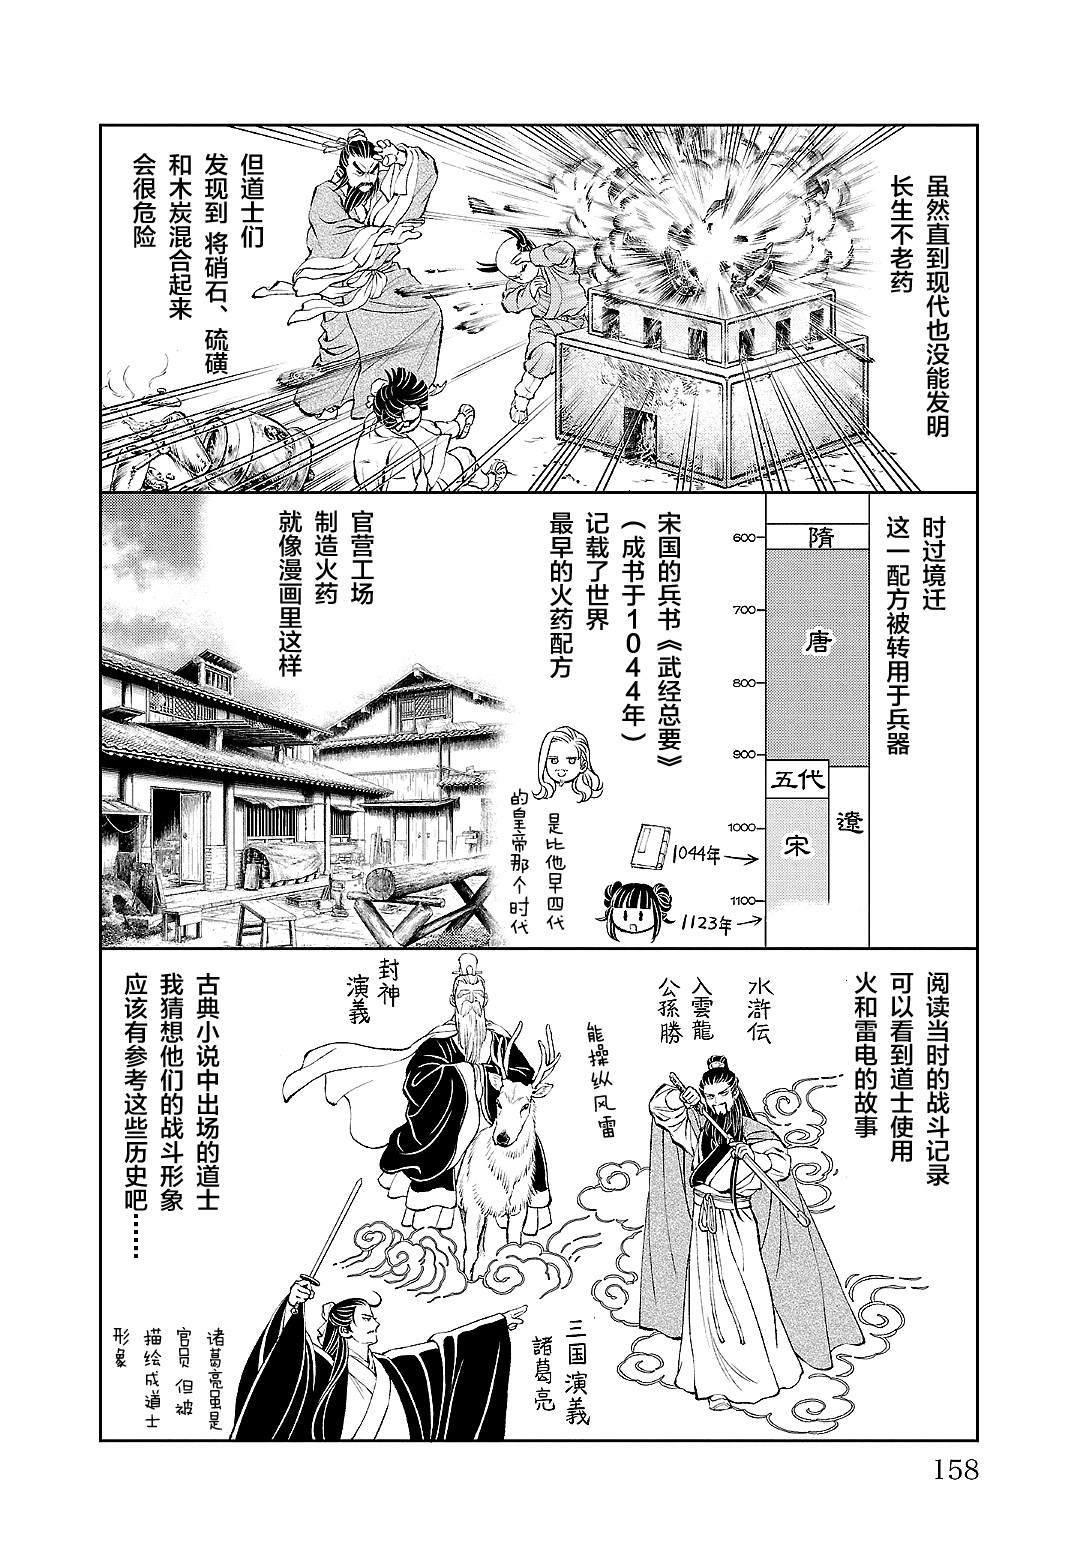 天上恋歌~金之公主与火之药师~漫画,第六卷后记3图